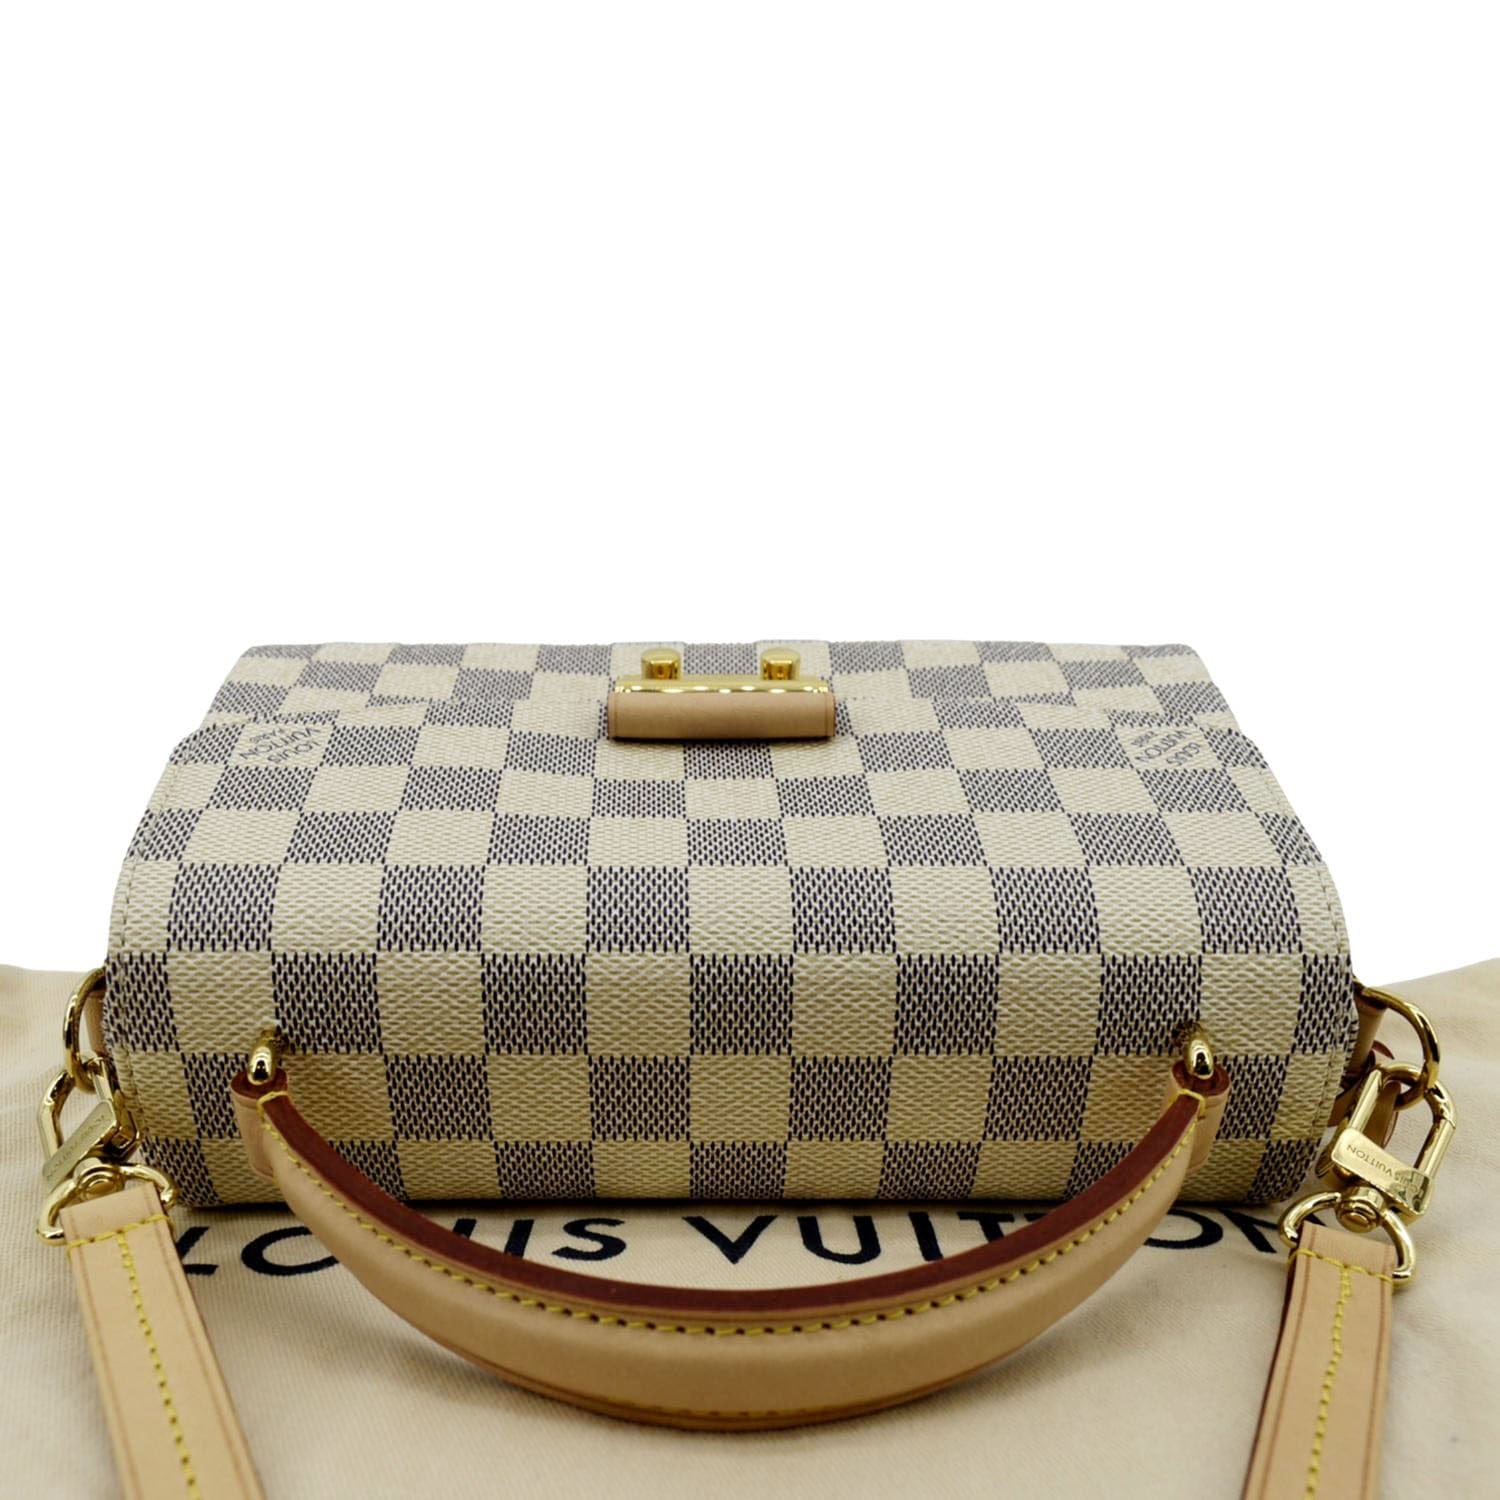 Authentic Louis Vuitton Croisette Damier Azur Crossbody Handbag